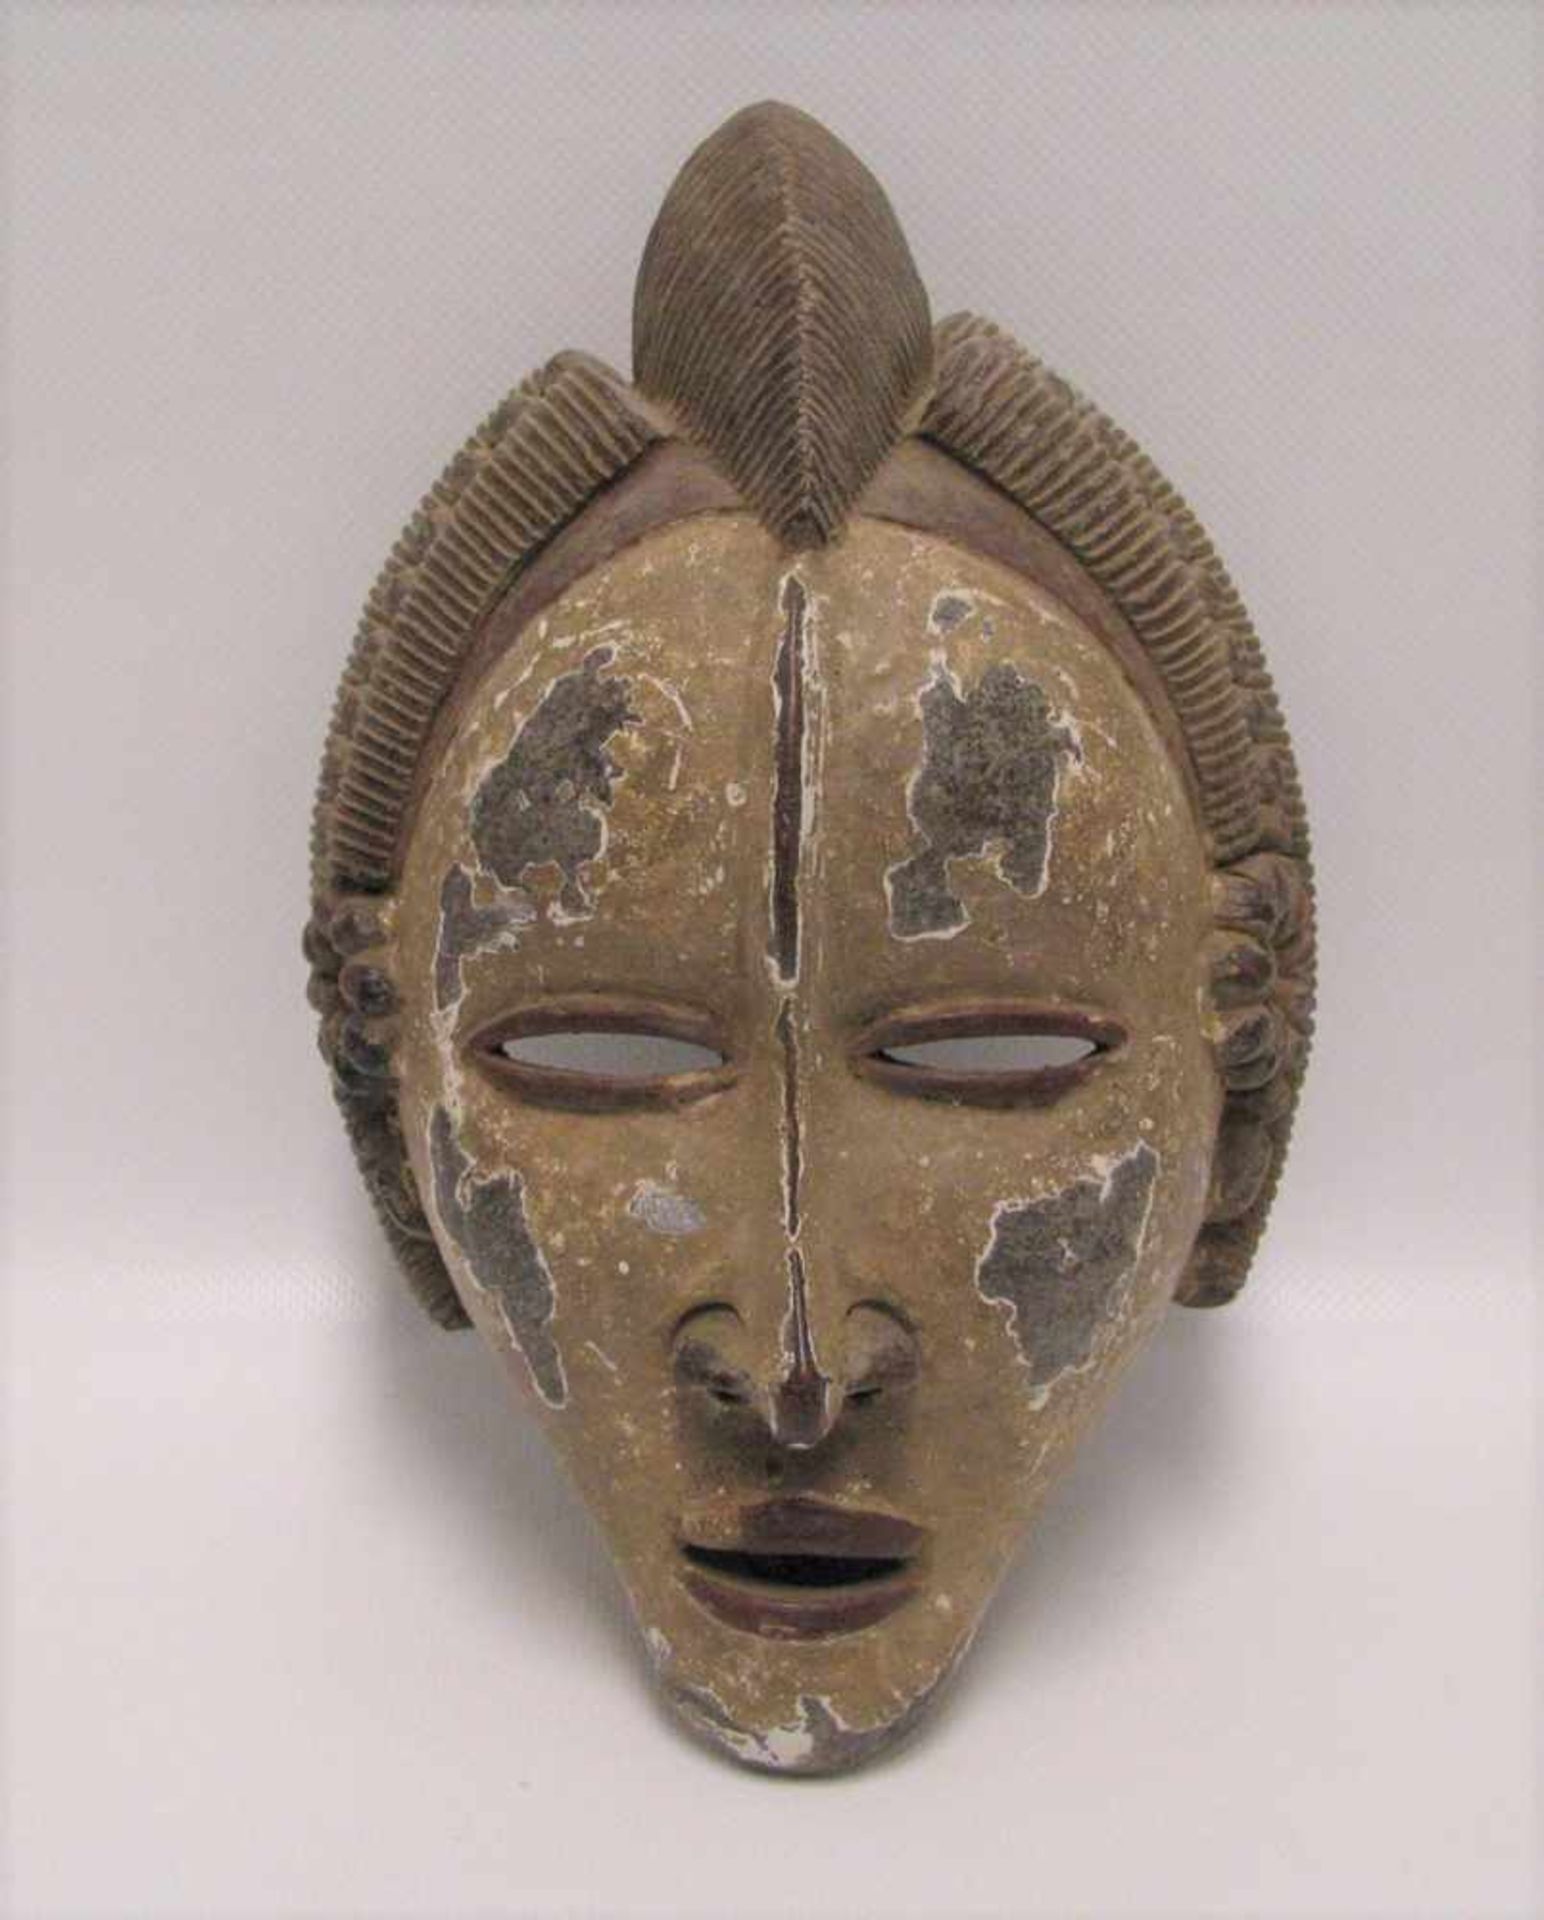 Maske, Afrika, Gabun, Holz beschnitzt, teils farbig gefasst, 22 x 16 x 11 cm.